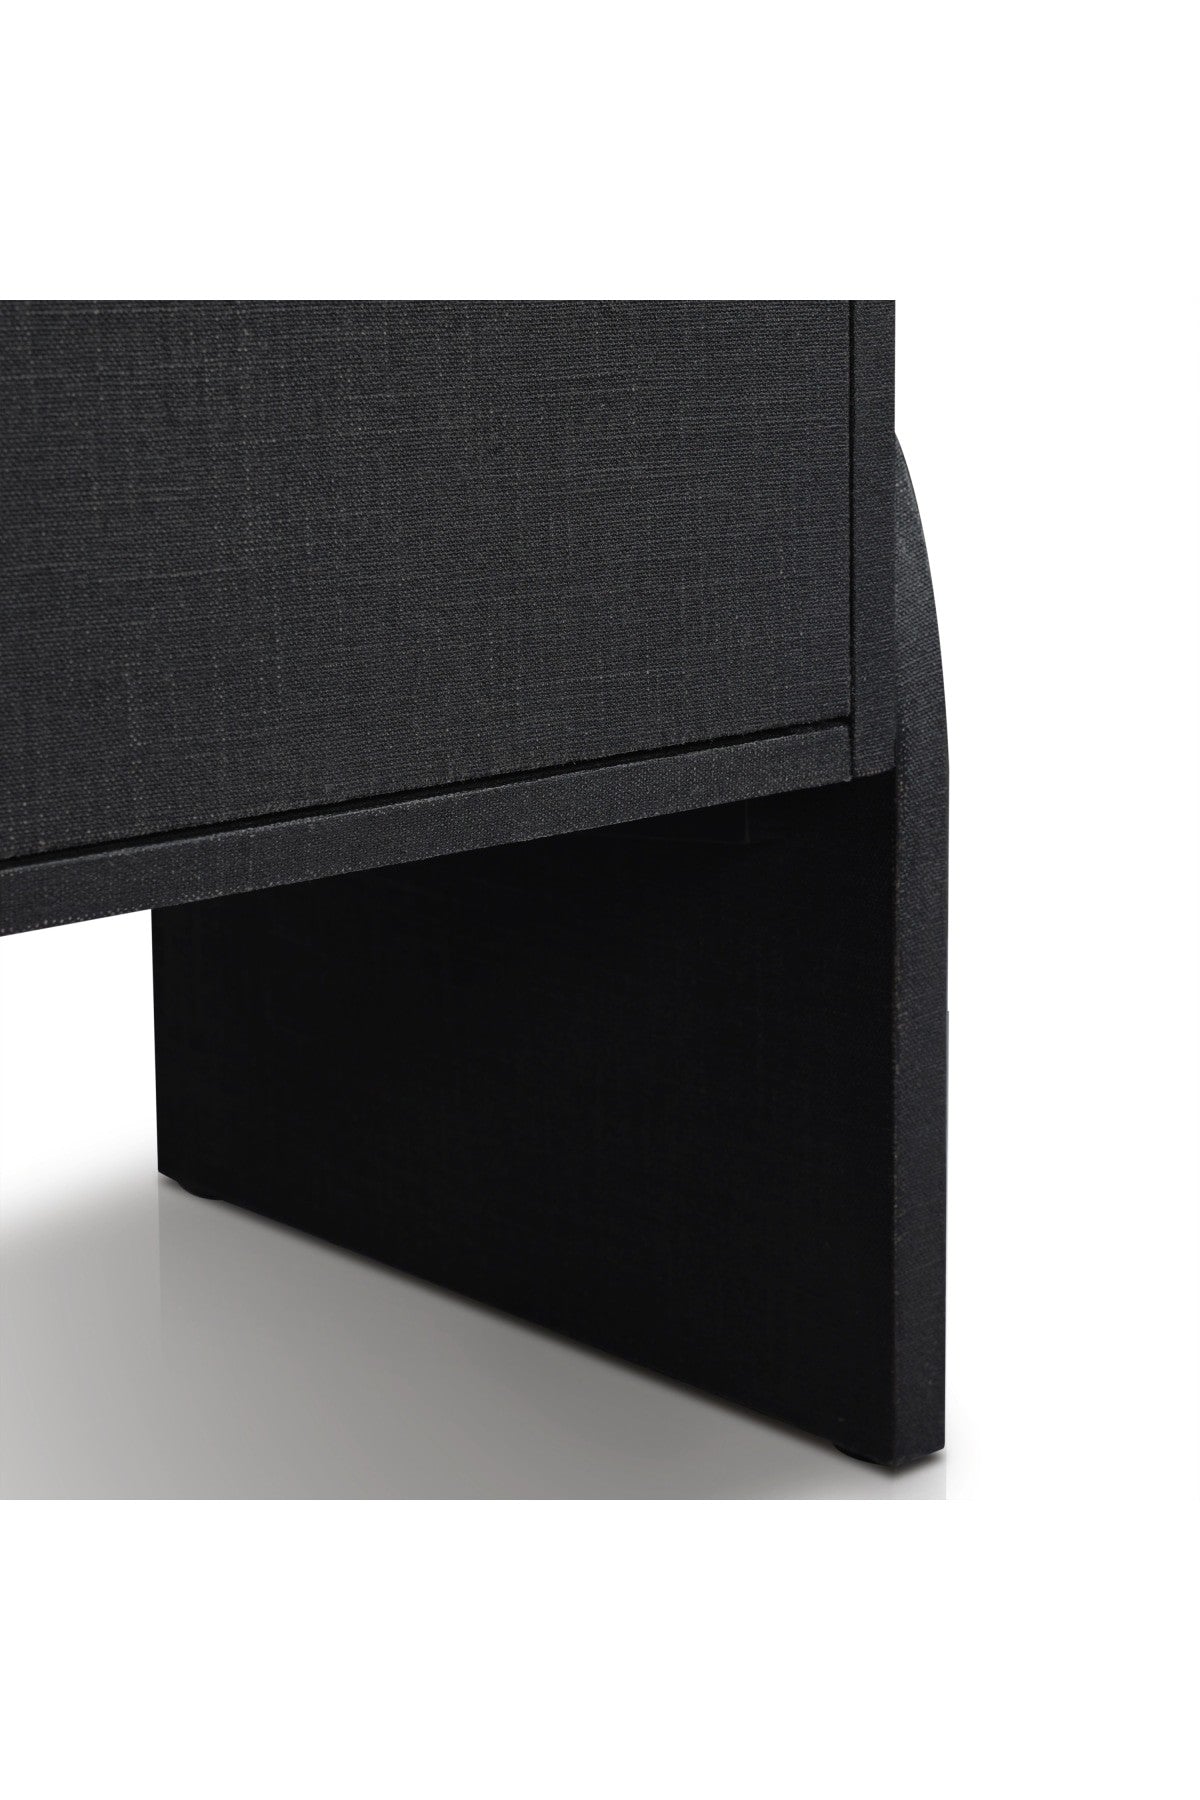 Crescio Sideboard- Black Linen